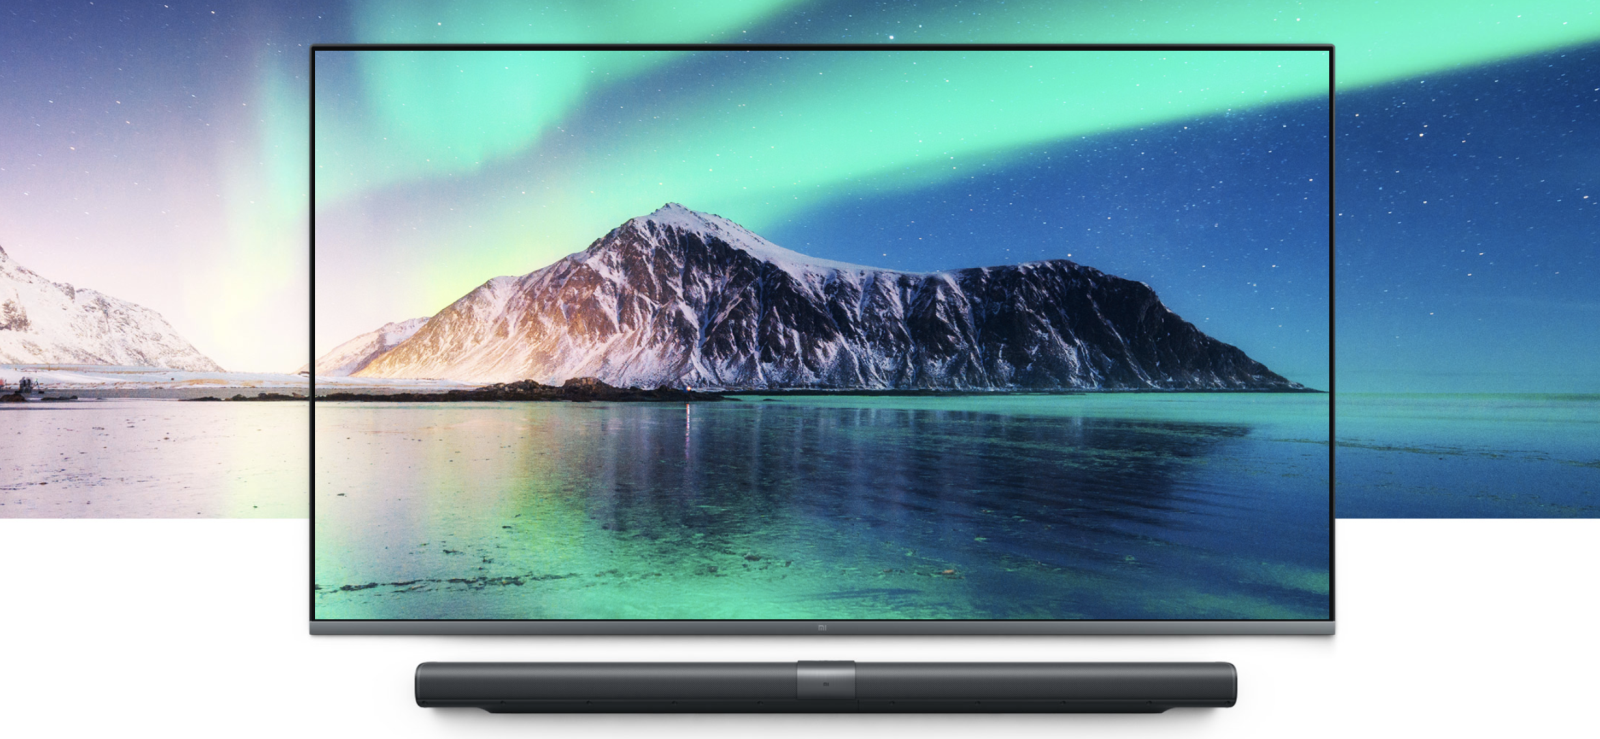 Mi Mural Tv 65 inch màn 4K HDR toàn màn hình